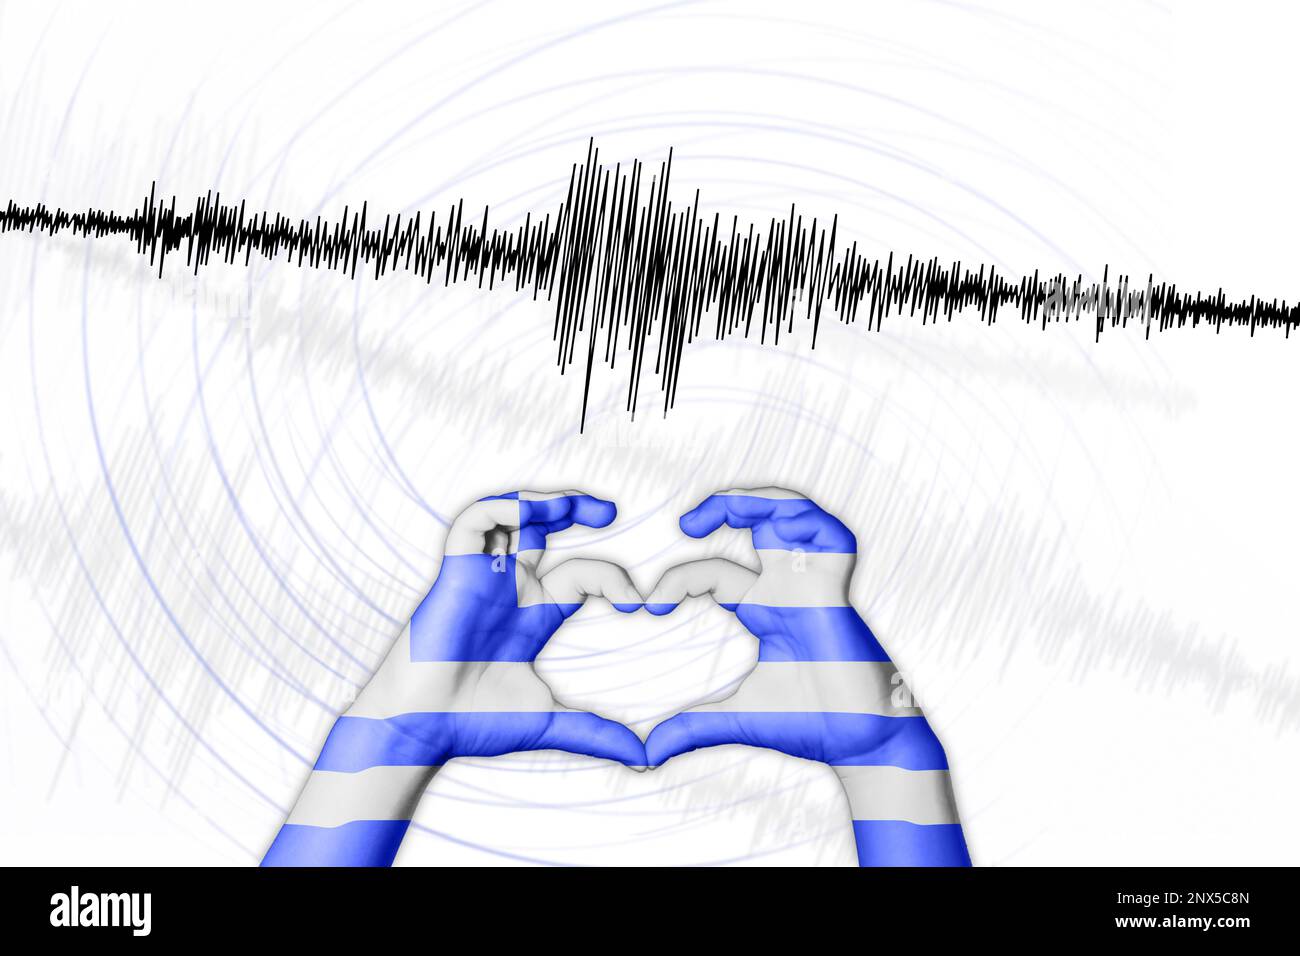 Erdbeben Griechenland Symbol der Heart Richter Scale Stockfoto